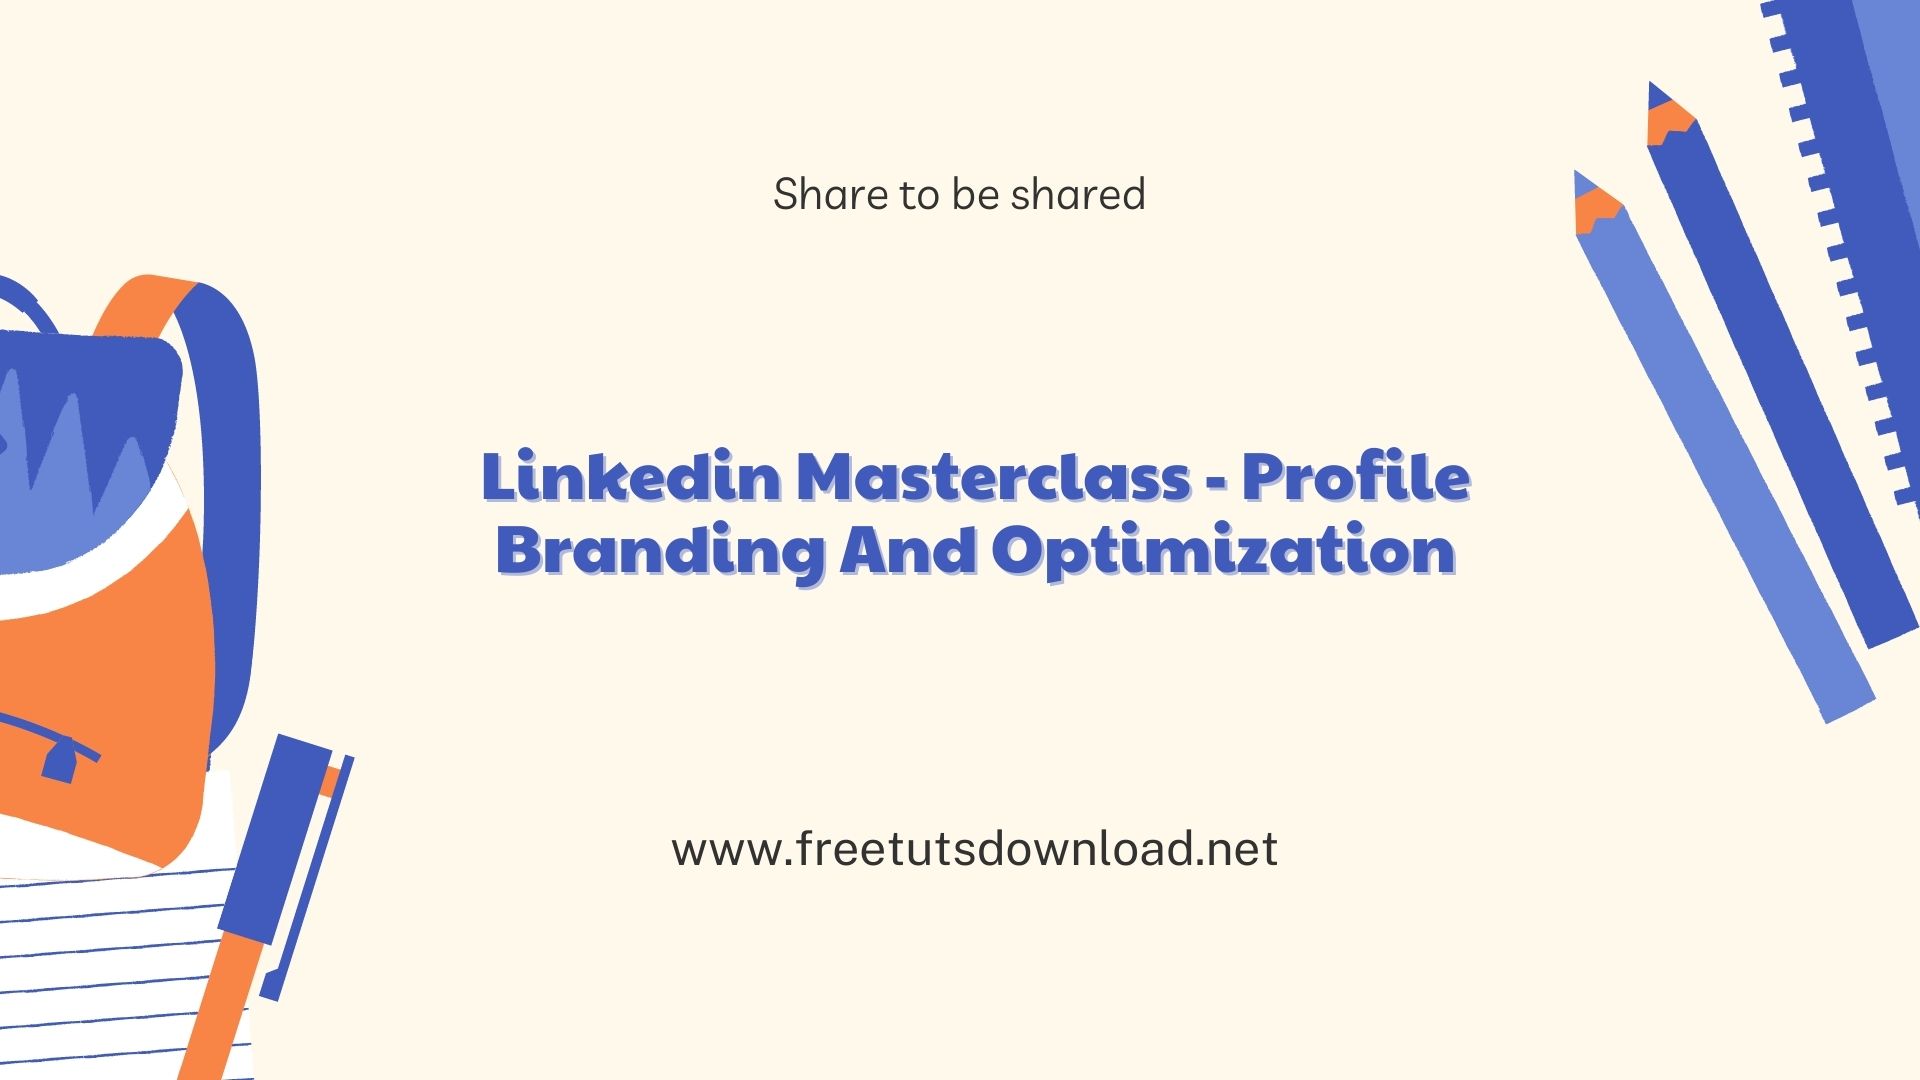 Linkedin Masterclass - Profile Branding And Optimization